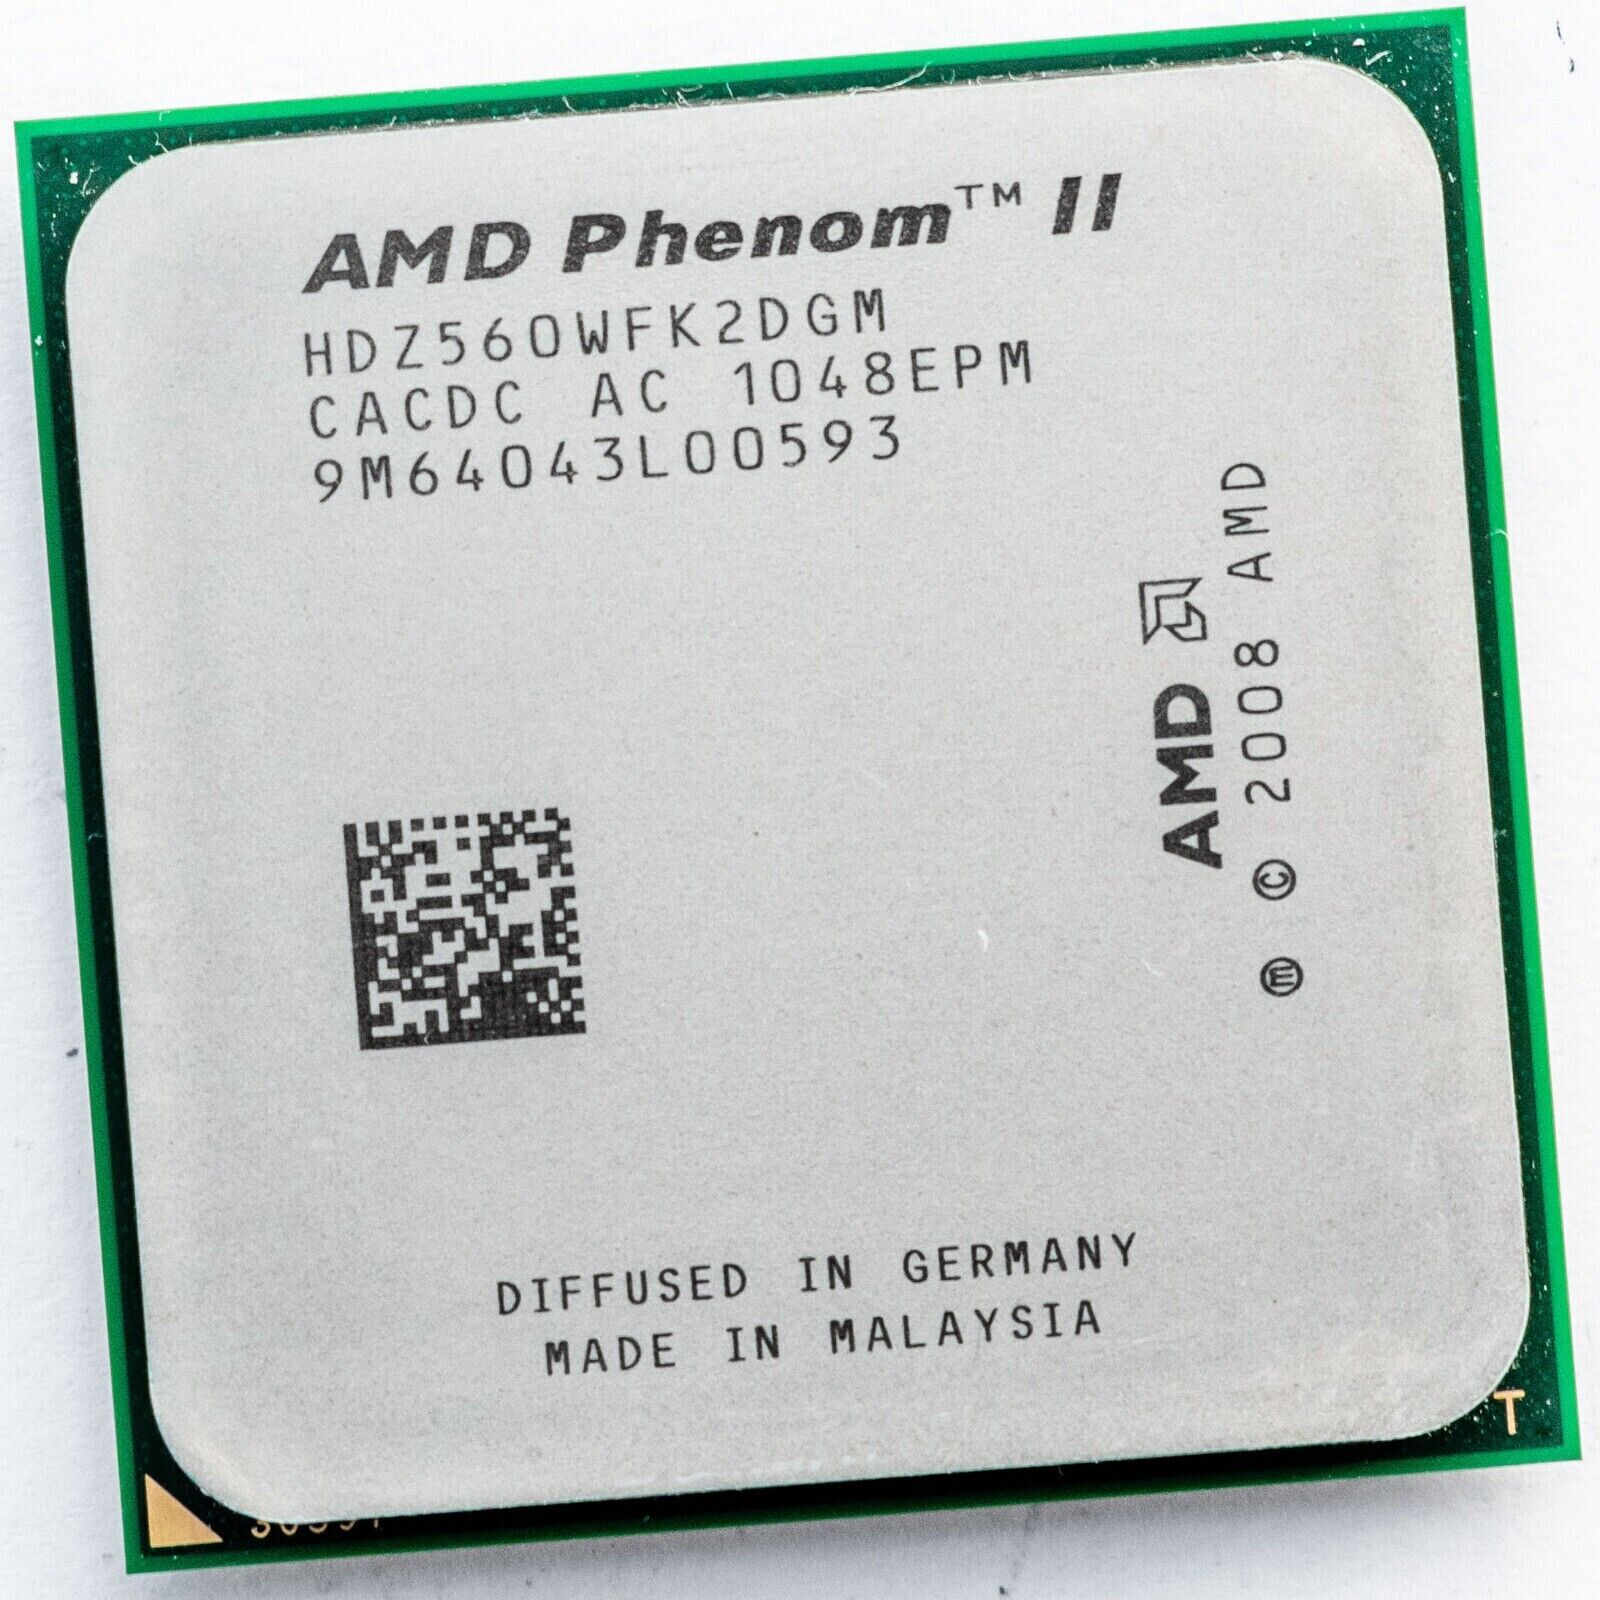 AMD Phenom II X2 560 - HDZ560WFK2DGM 3.3GHz Processor